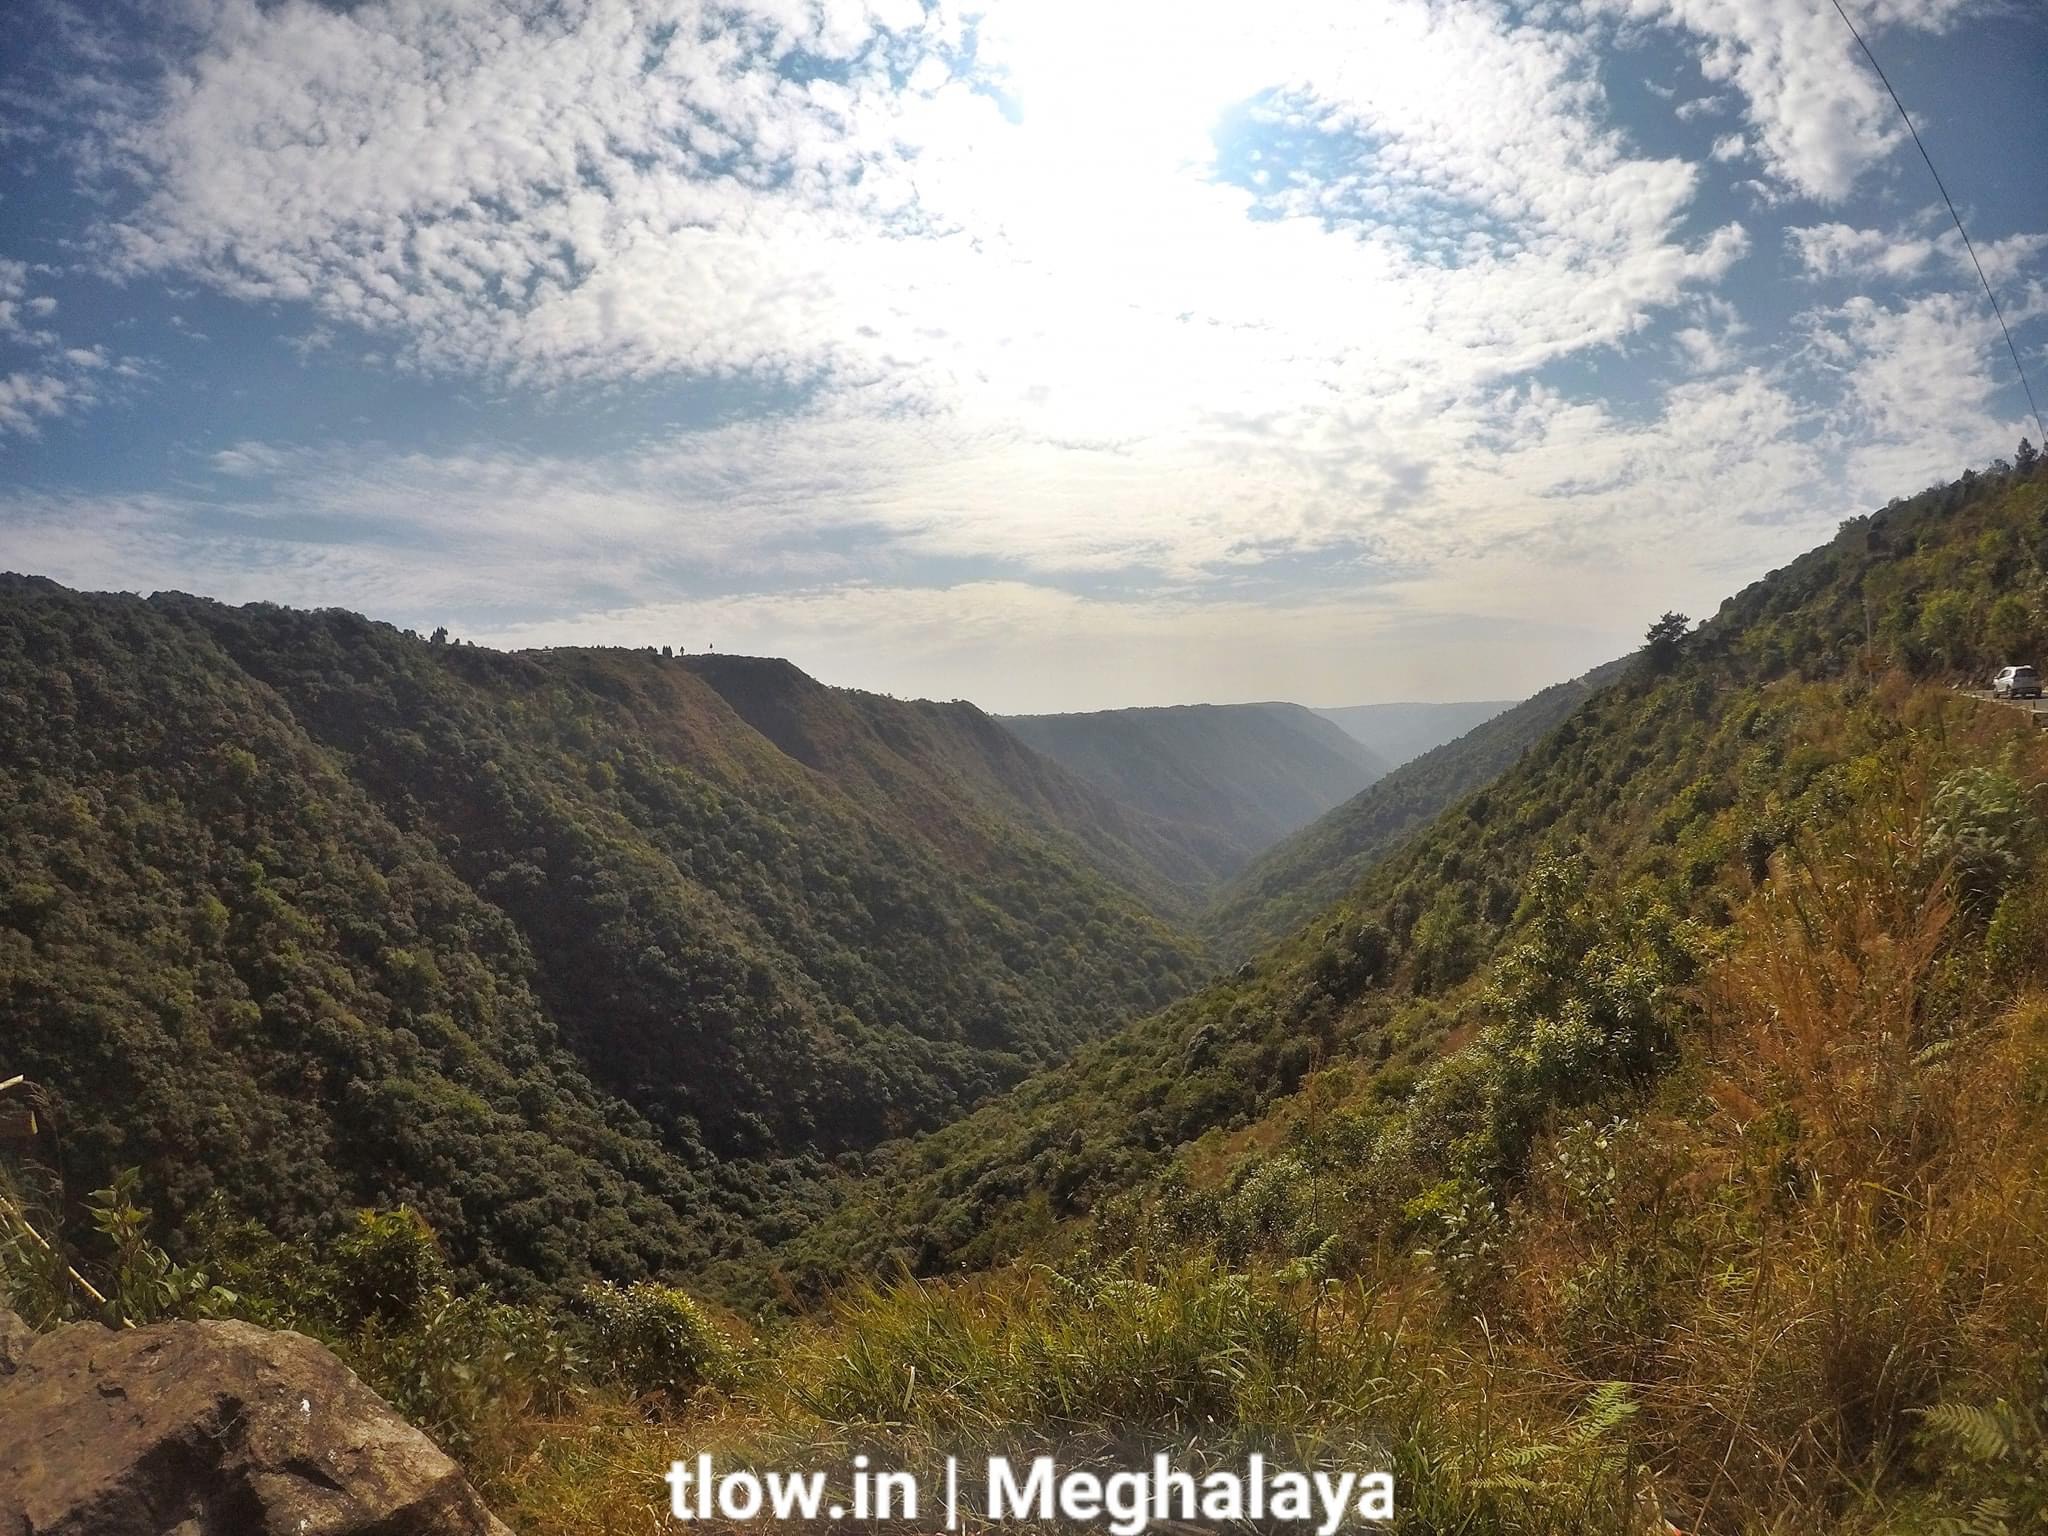 Shillong Meghalaya valley view